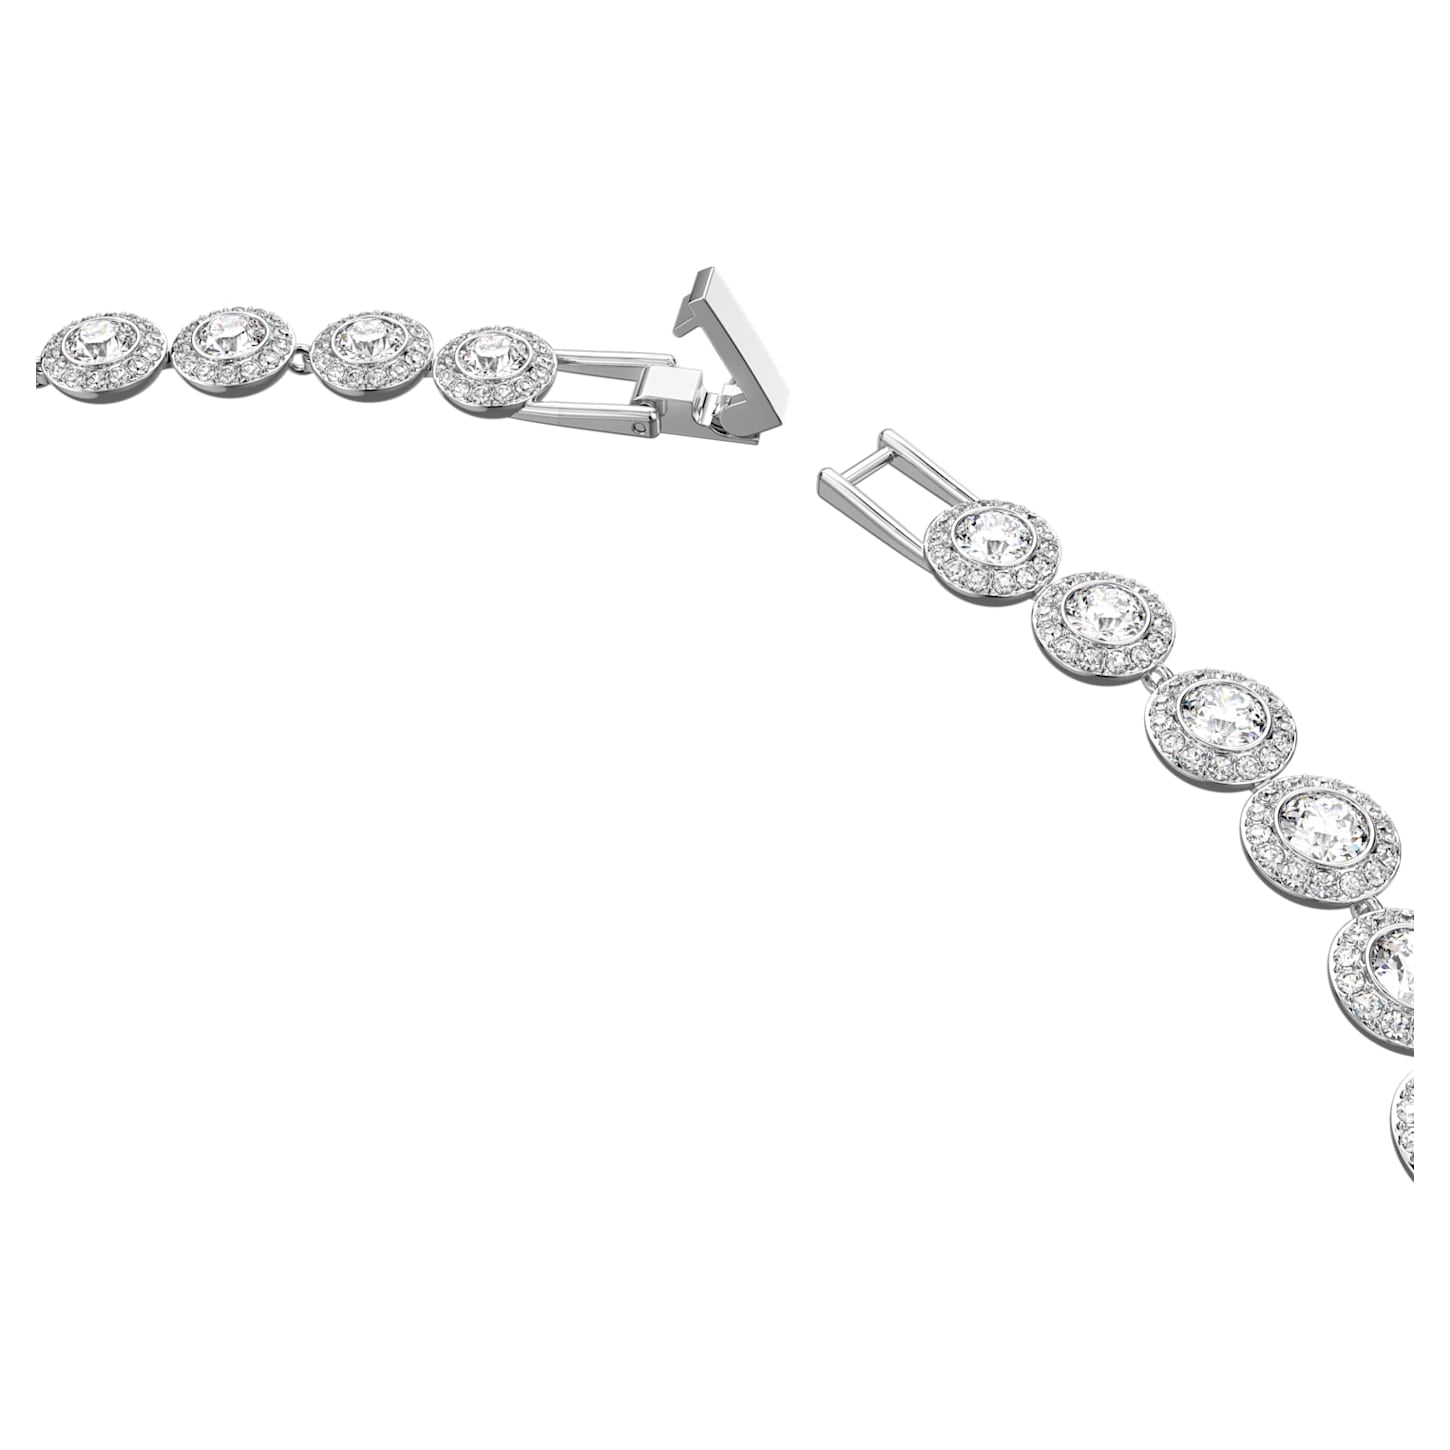 Angelic - Rund - Weißes Silber - Halskette - Swarovski